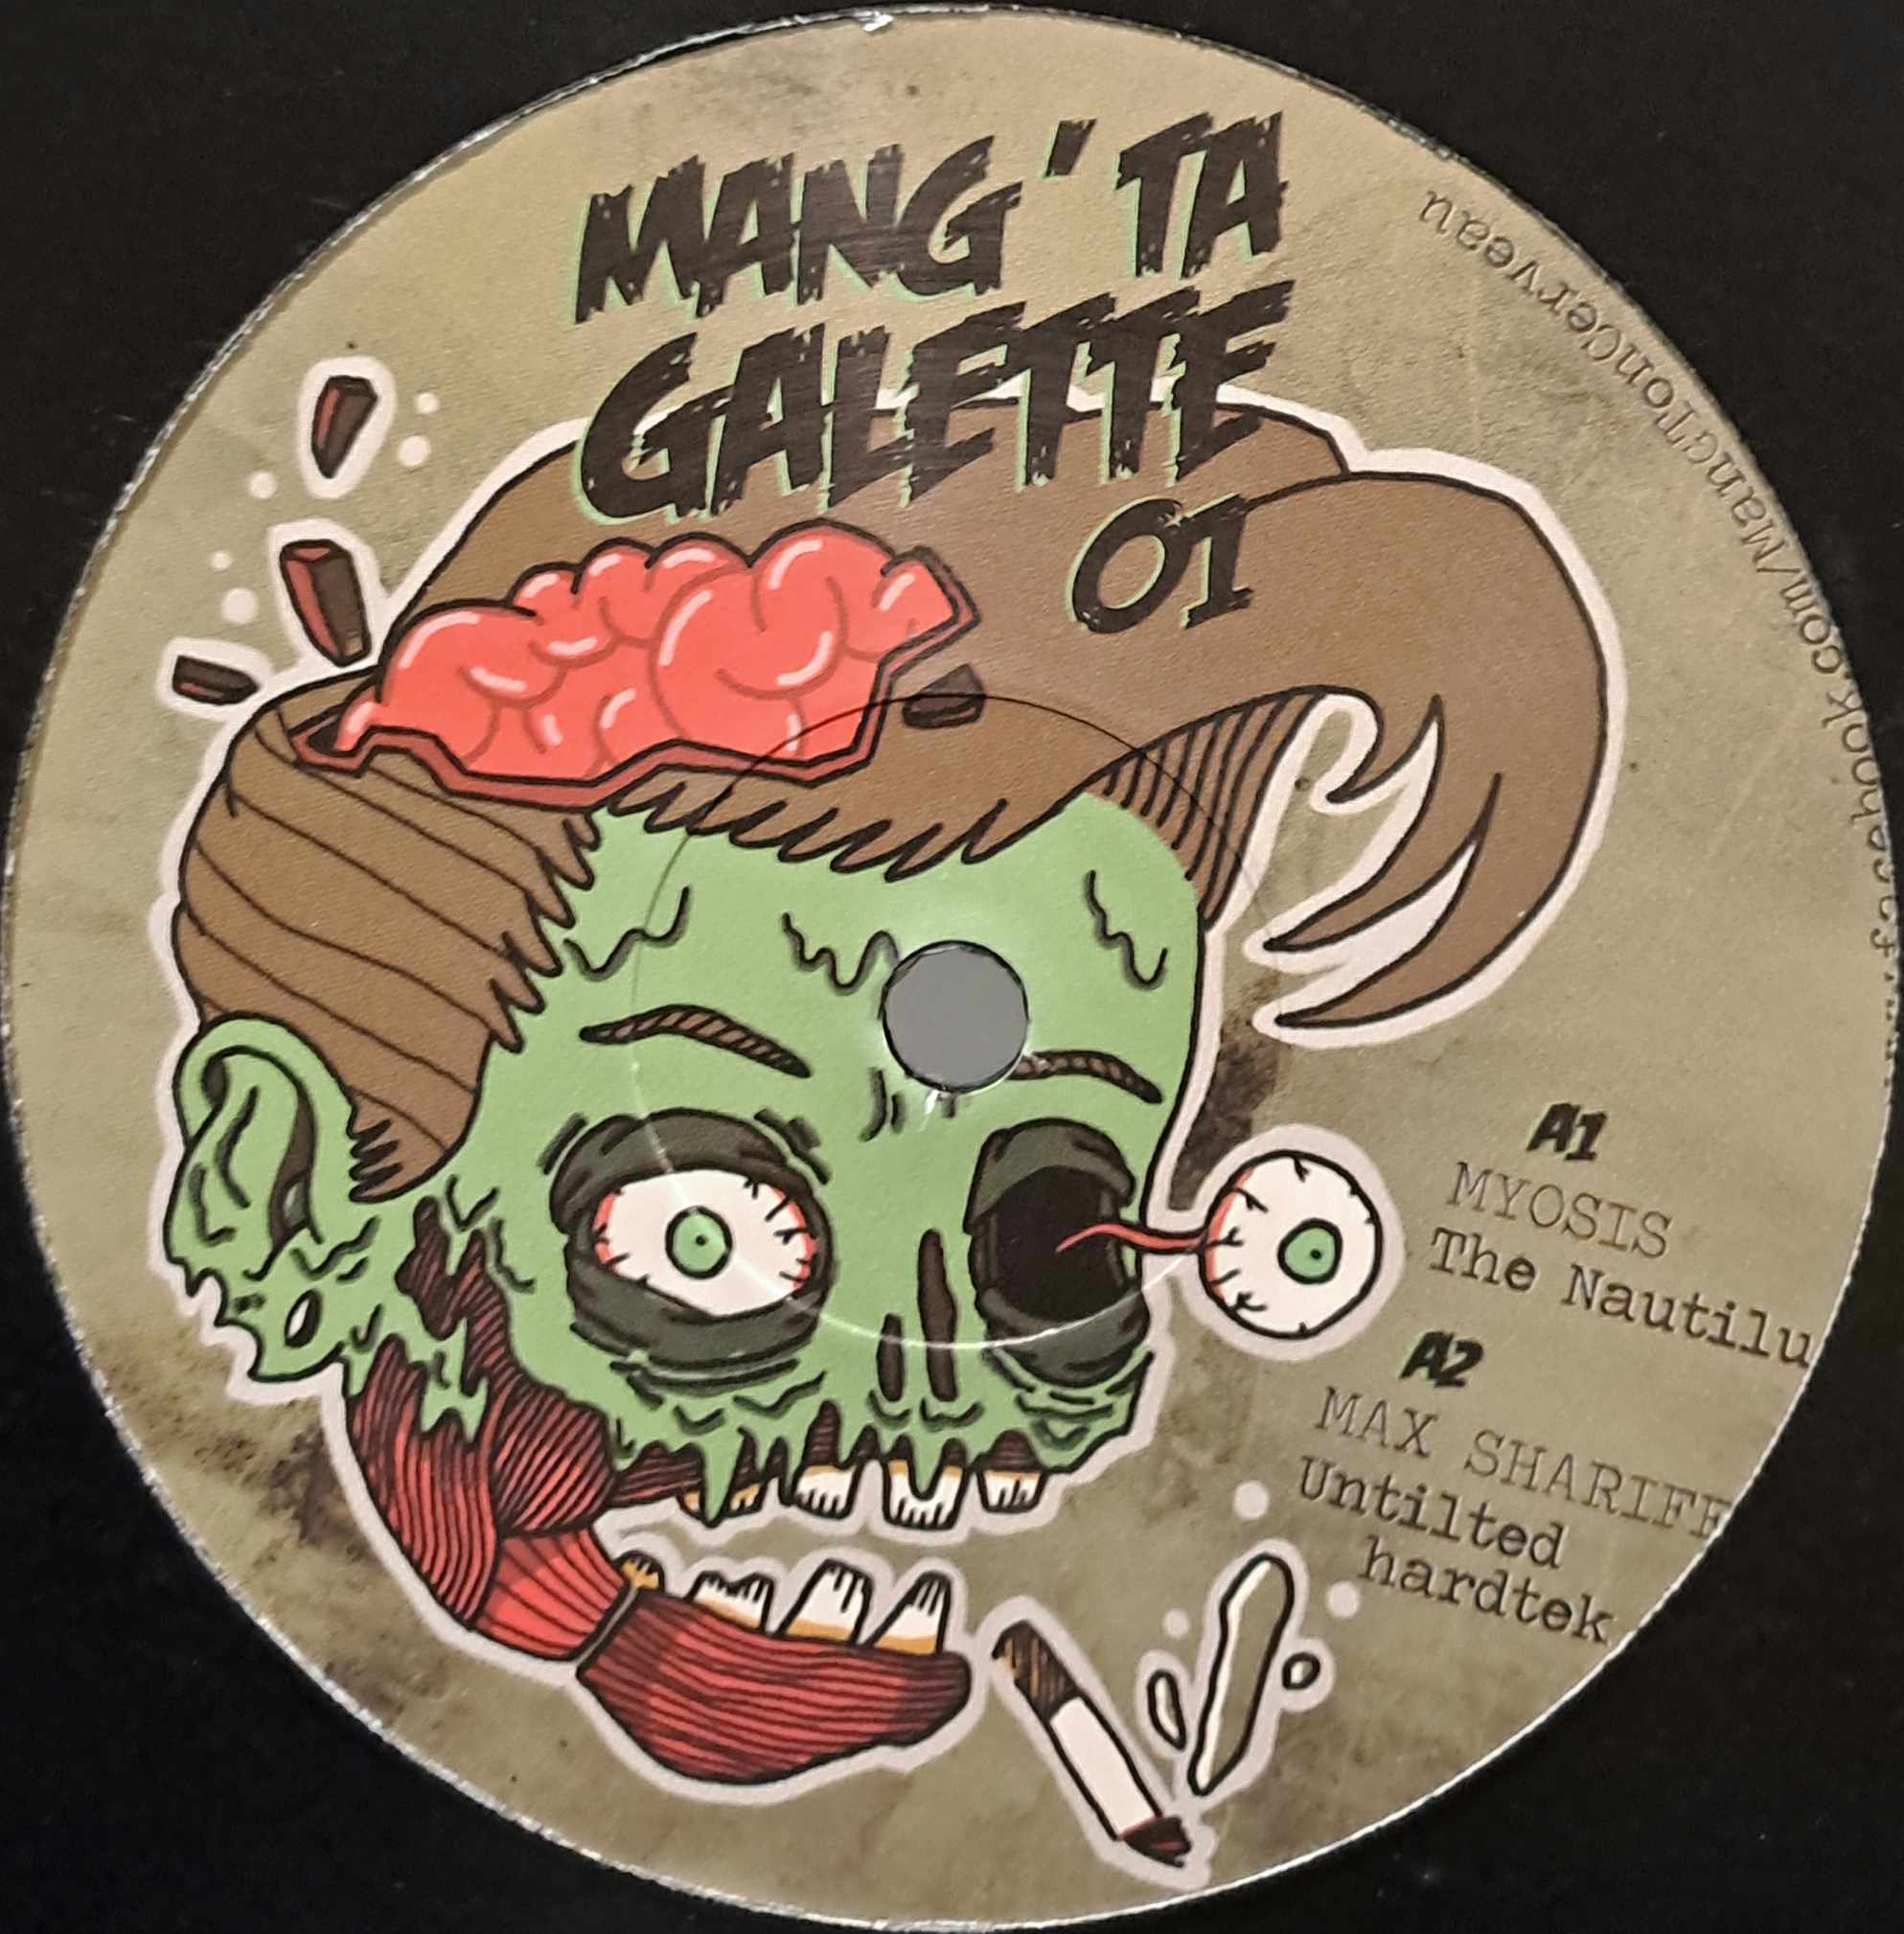 Mang' Ta Galette 01 (toute dernière copie en stock) - vinyle freetekno